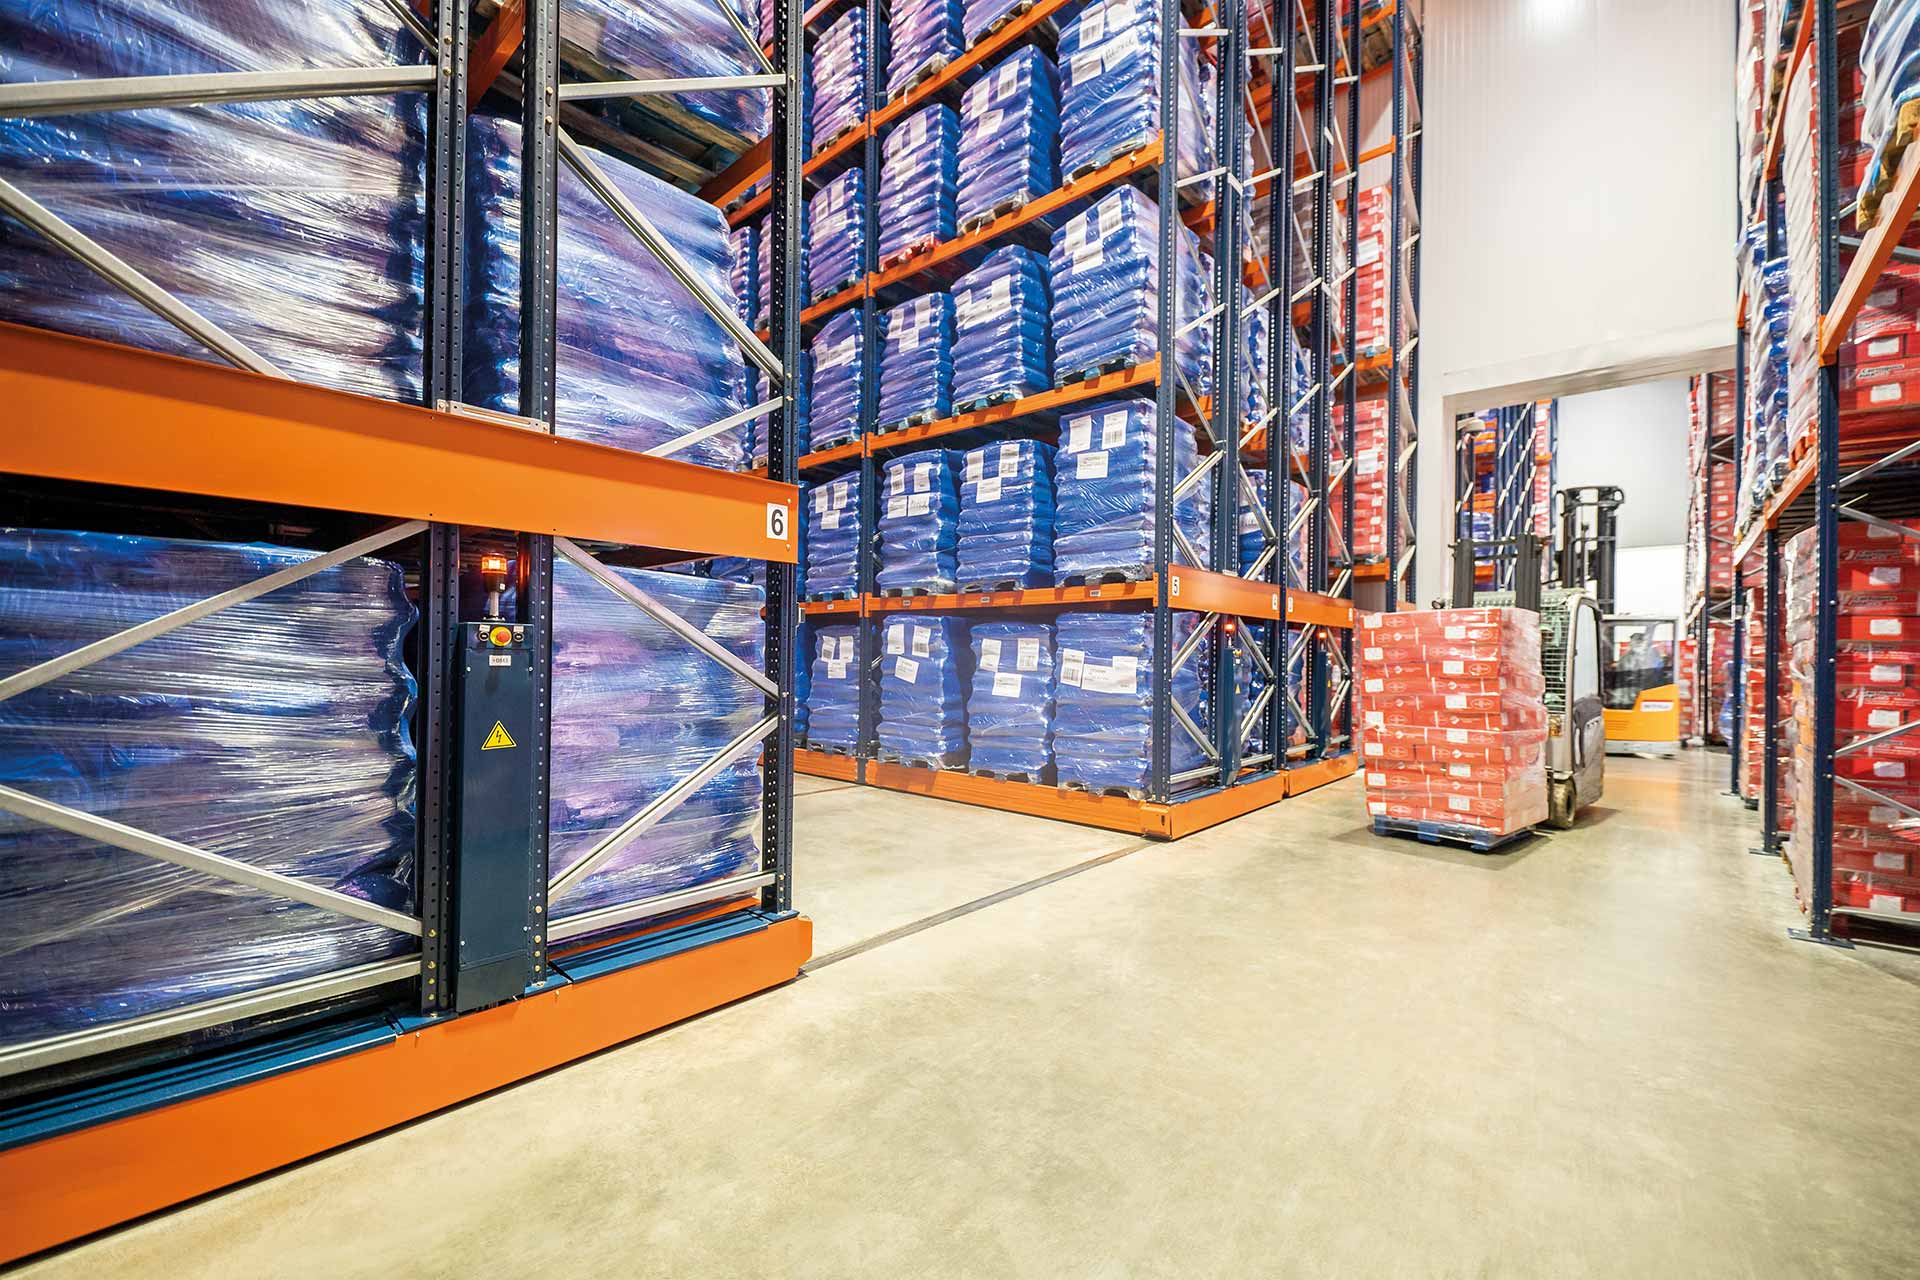 Movirack施工系統可以根據每個倉庫的需求與常規貨架結合使用